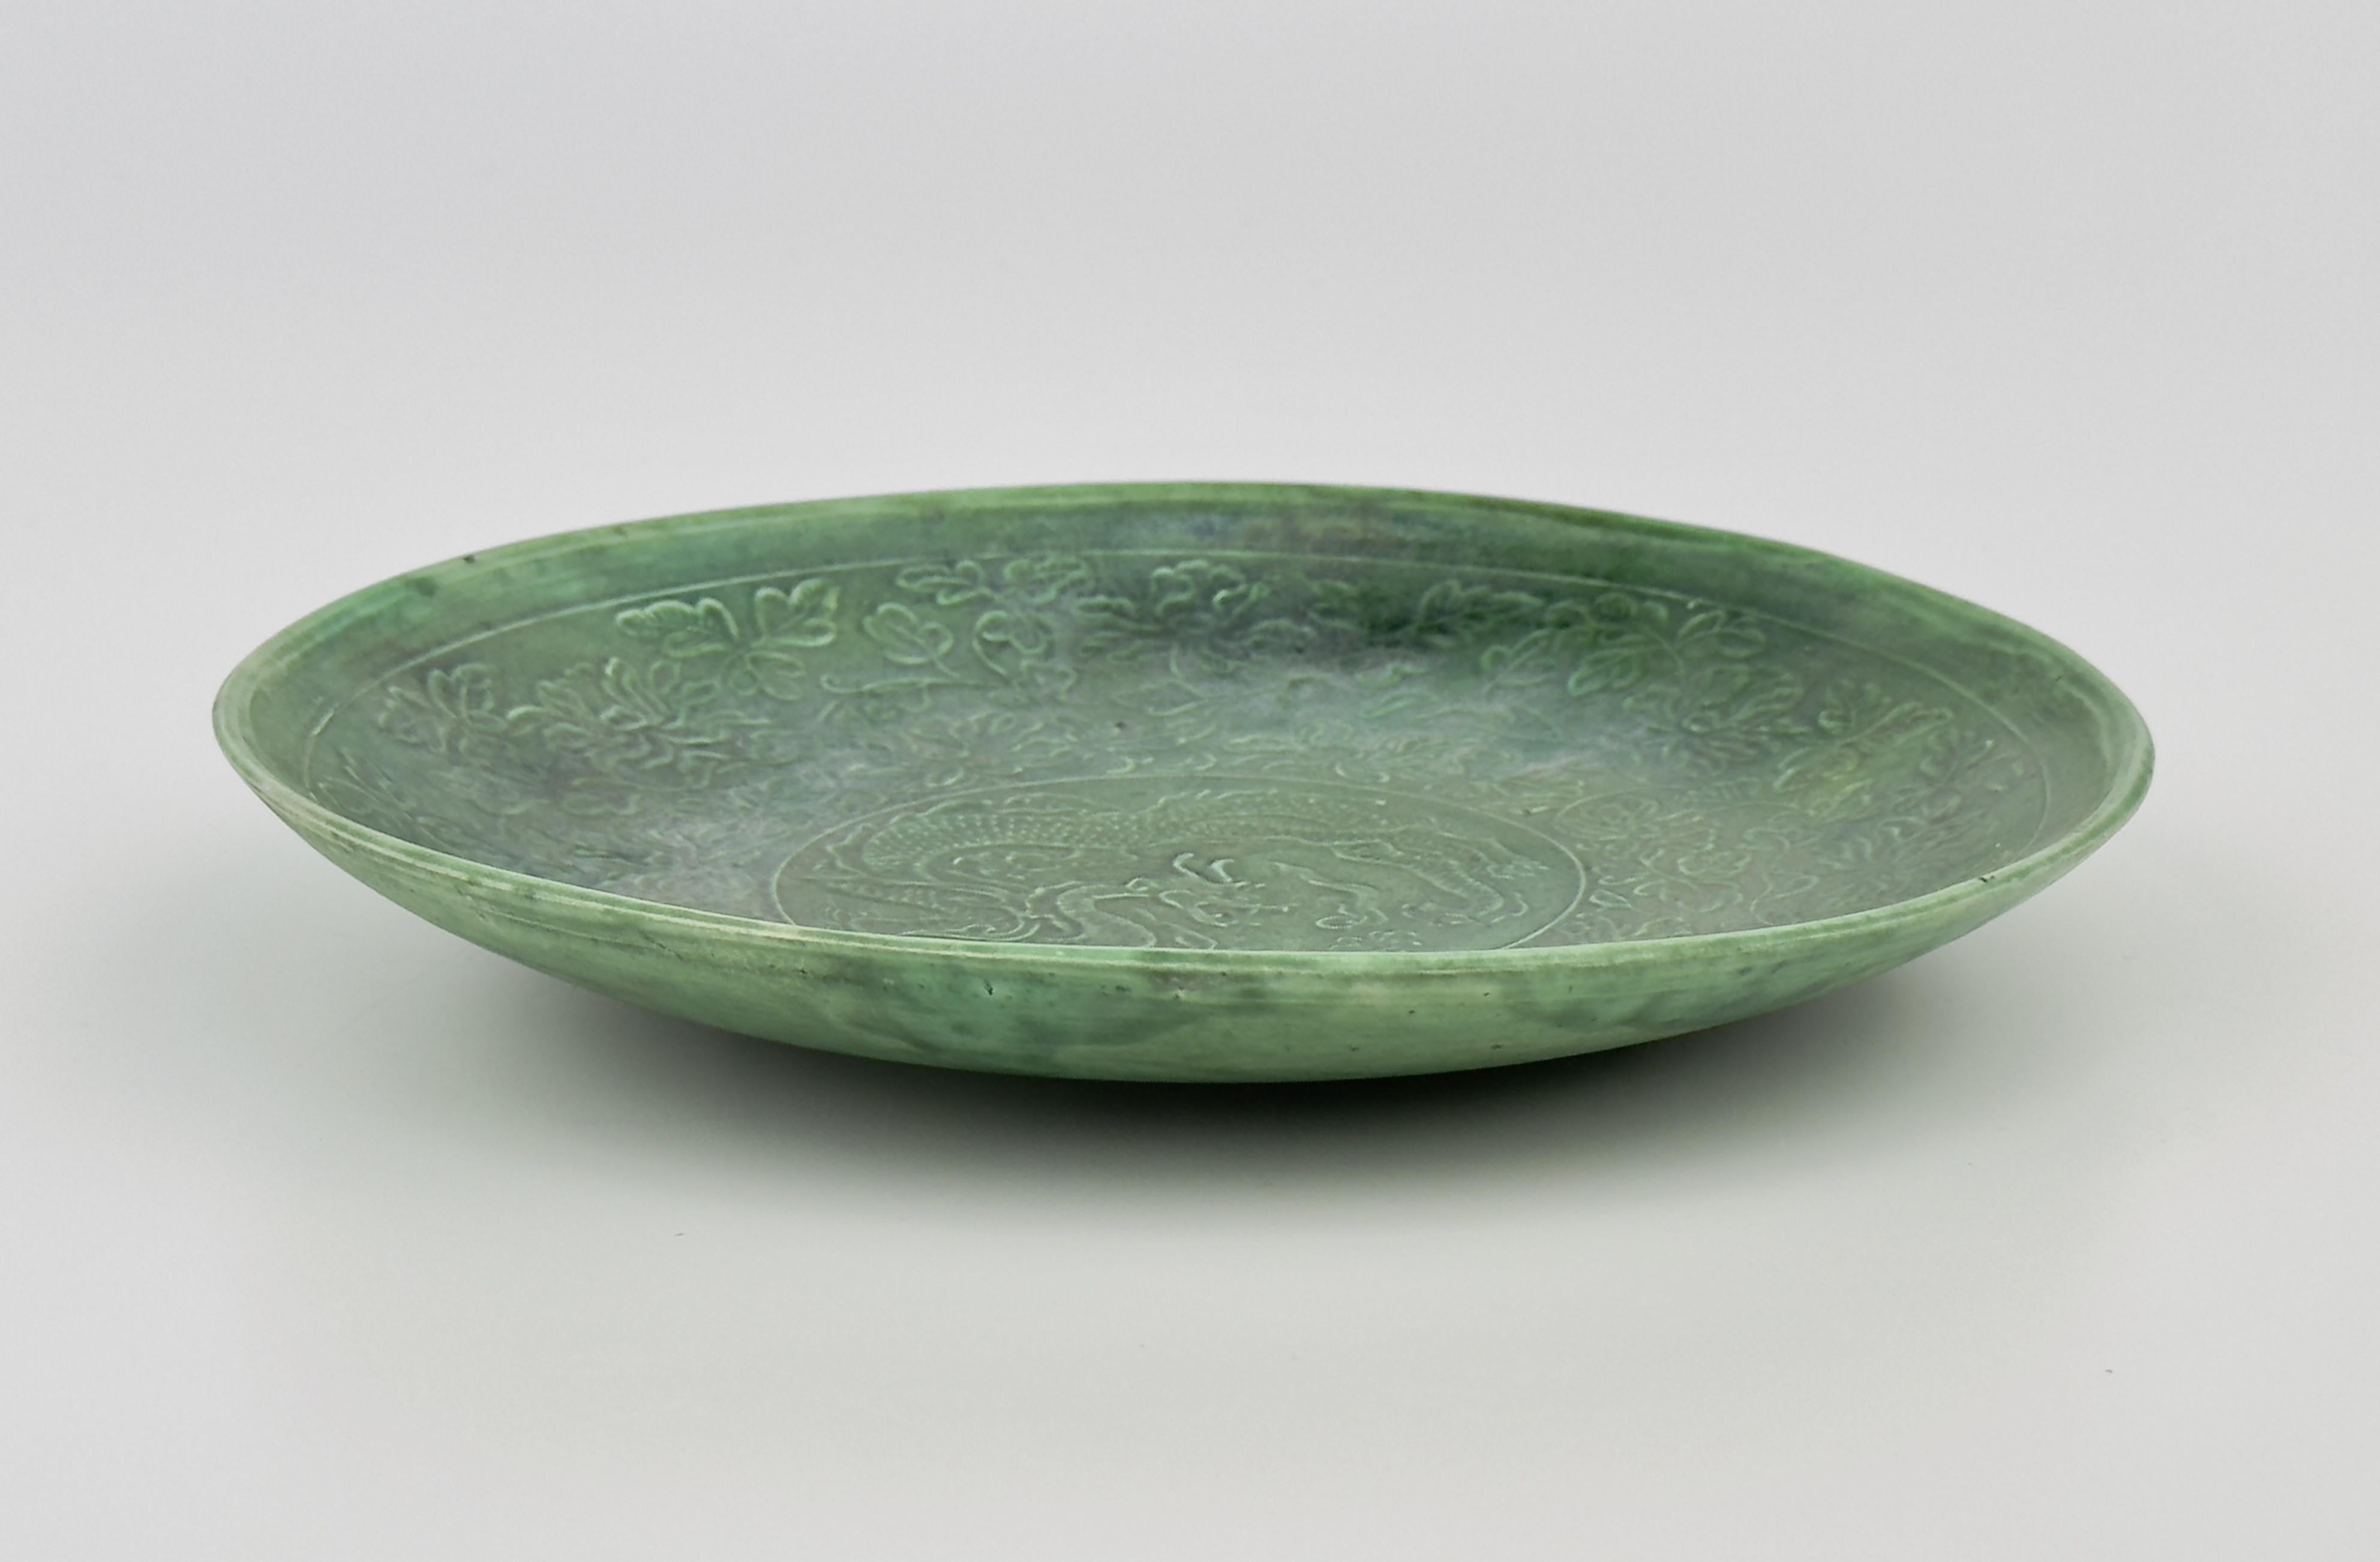 Diese grün glasierte Schale wurde mit viel Liebe zum Detail gefertigt, was das Können des Töpfers der Cizhou-Grün- und Ding-Ware unterstreicht. Seine zarte Form ist mit einem Drachen in der Mitte geschmückt. Das zentrale Drachenmotiv ist von einem